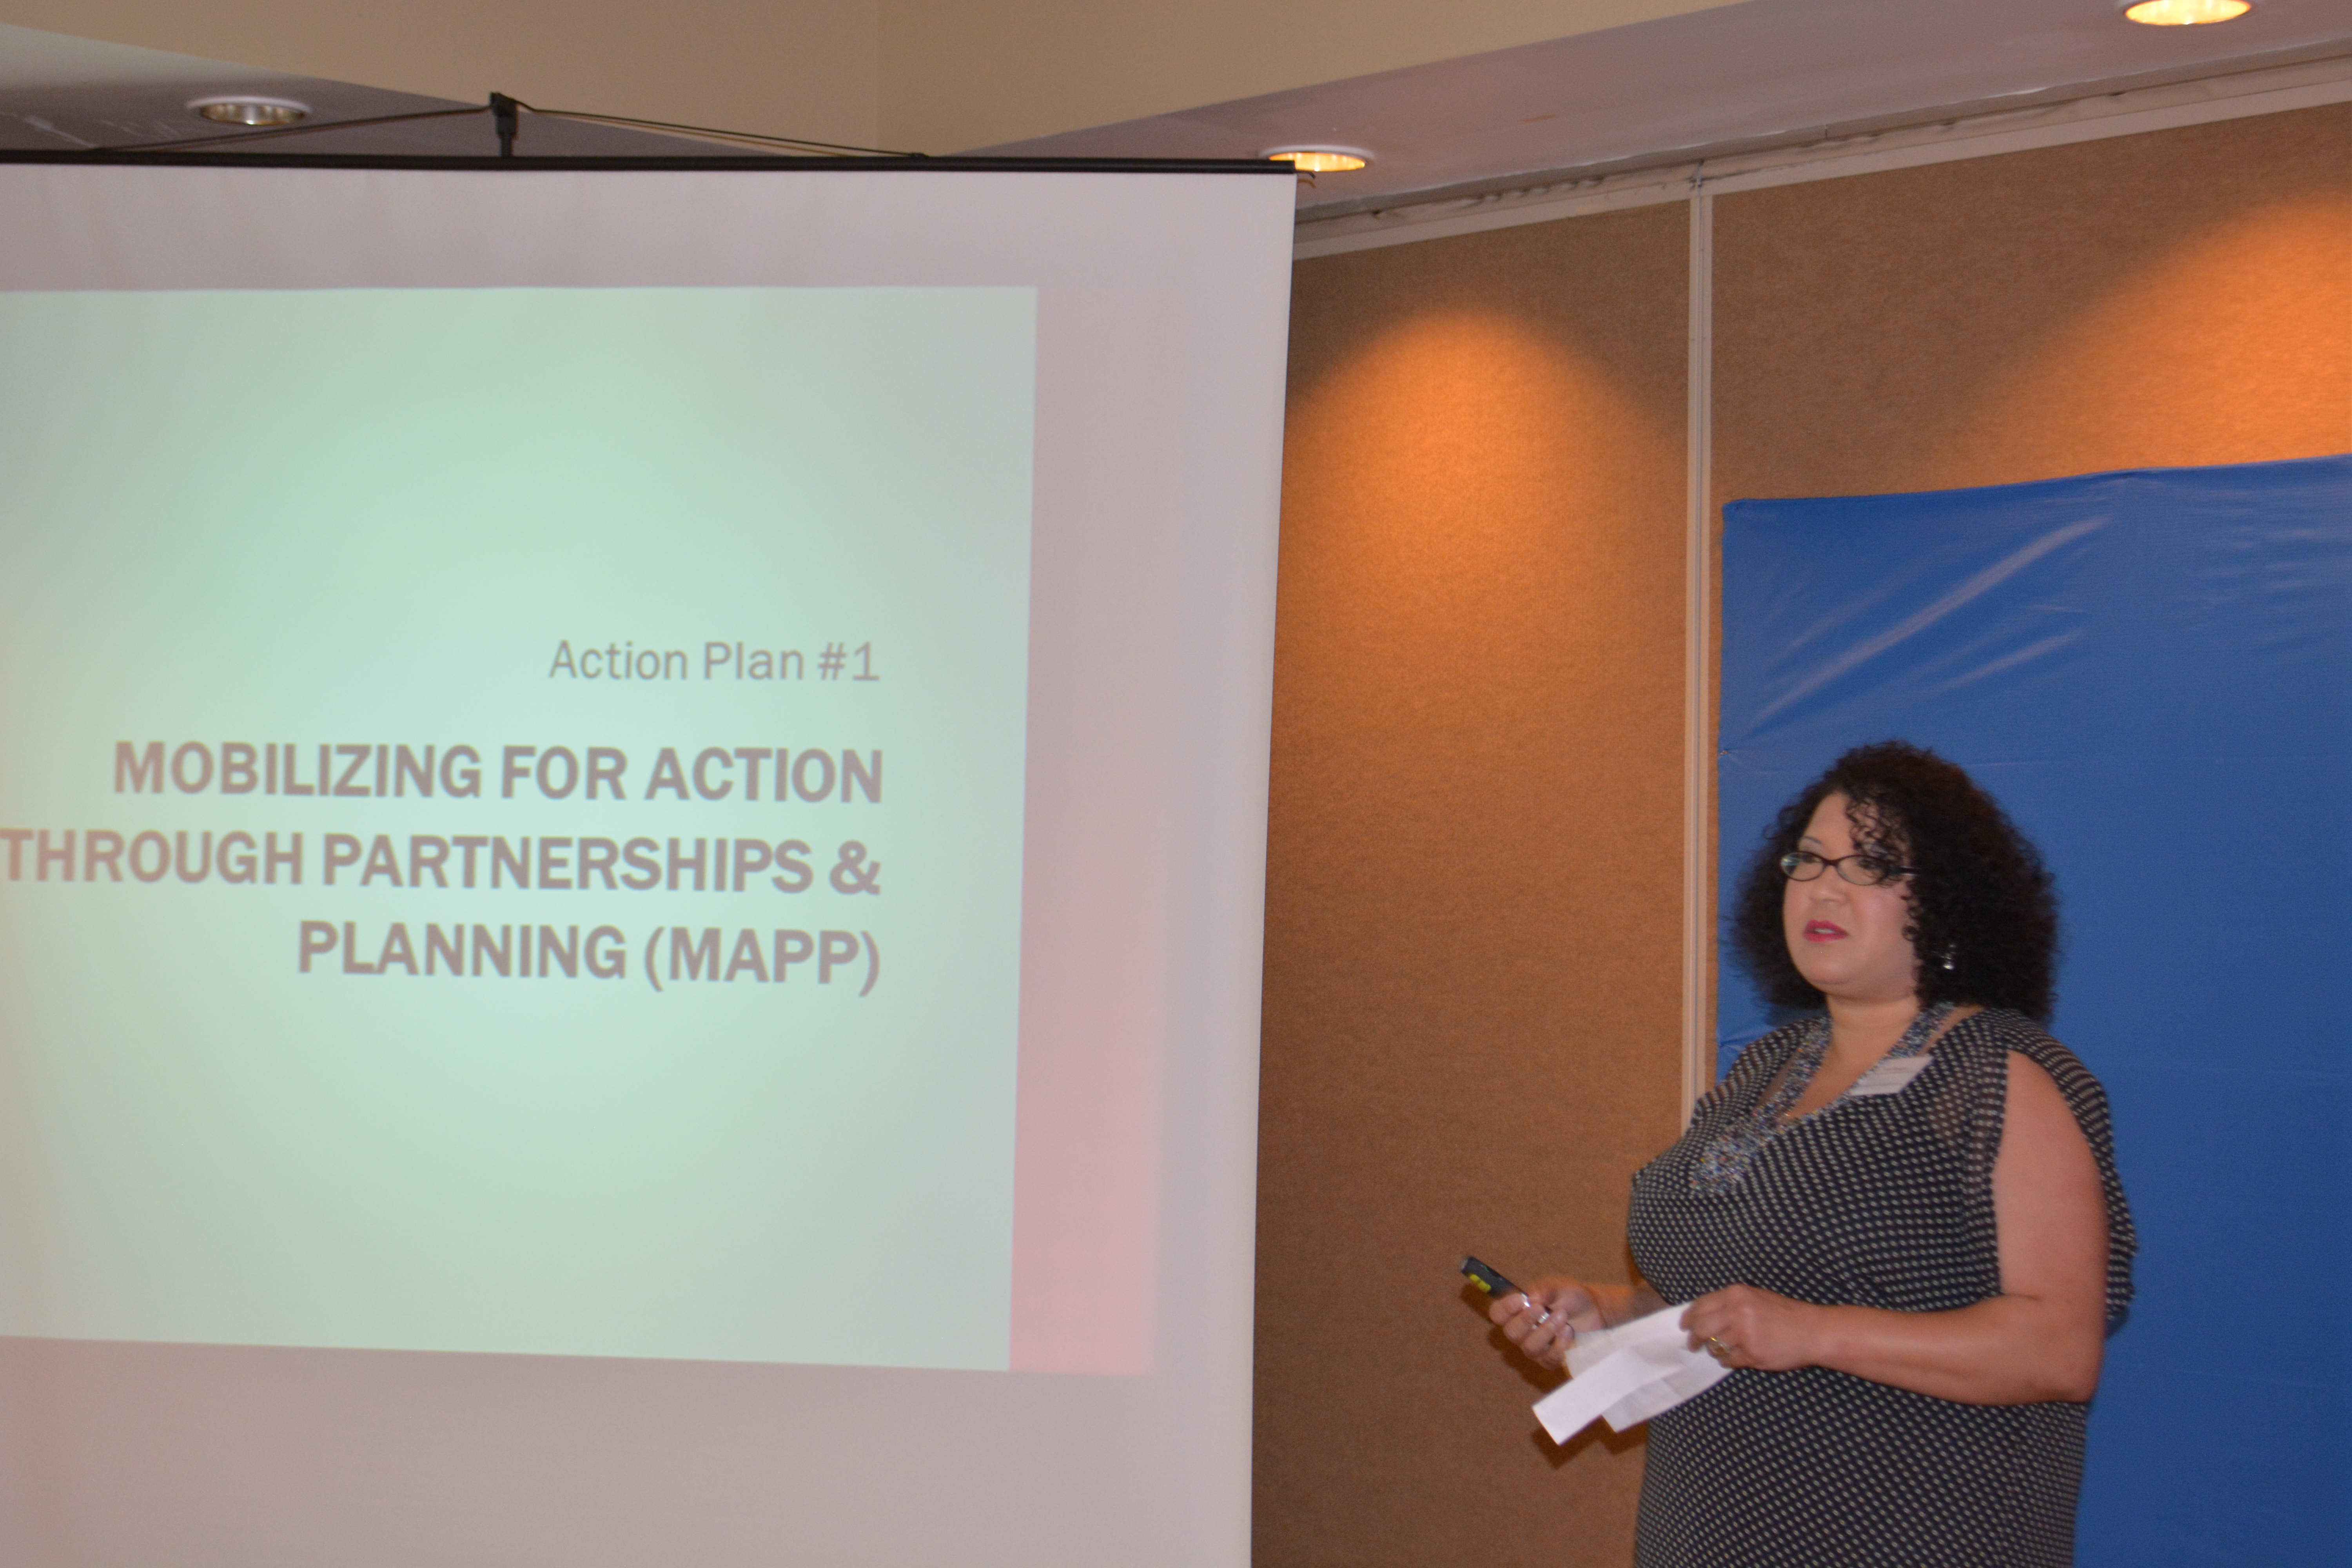 Vorstellung des Aktionsplans Nr. 1 Mobilisierung zum Handeln durch Partnerschaften und Planung MAPP.